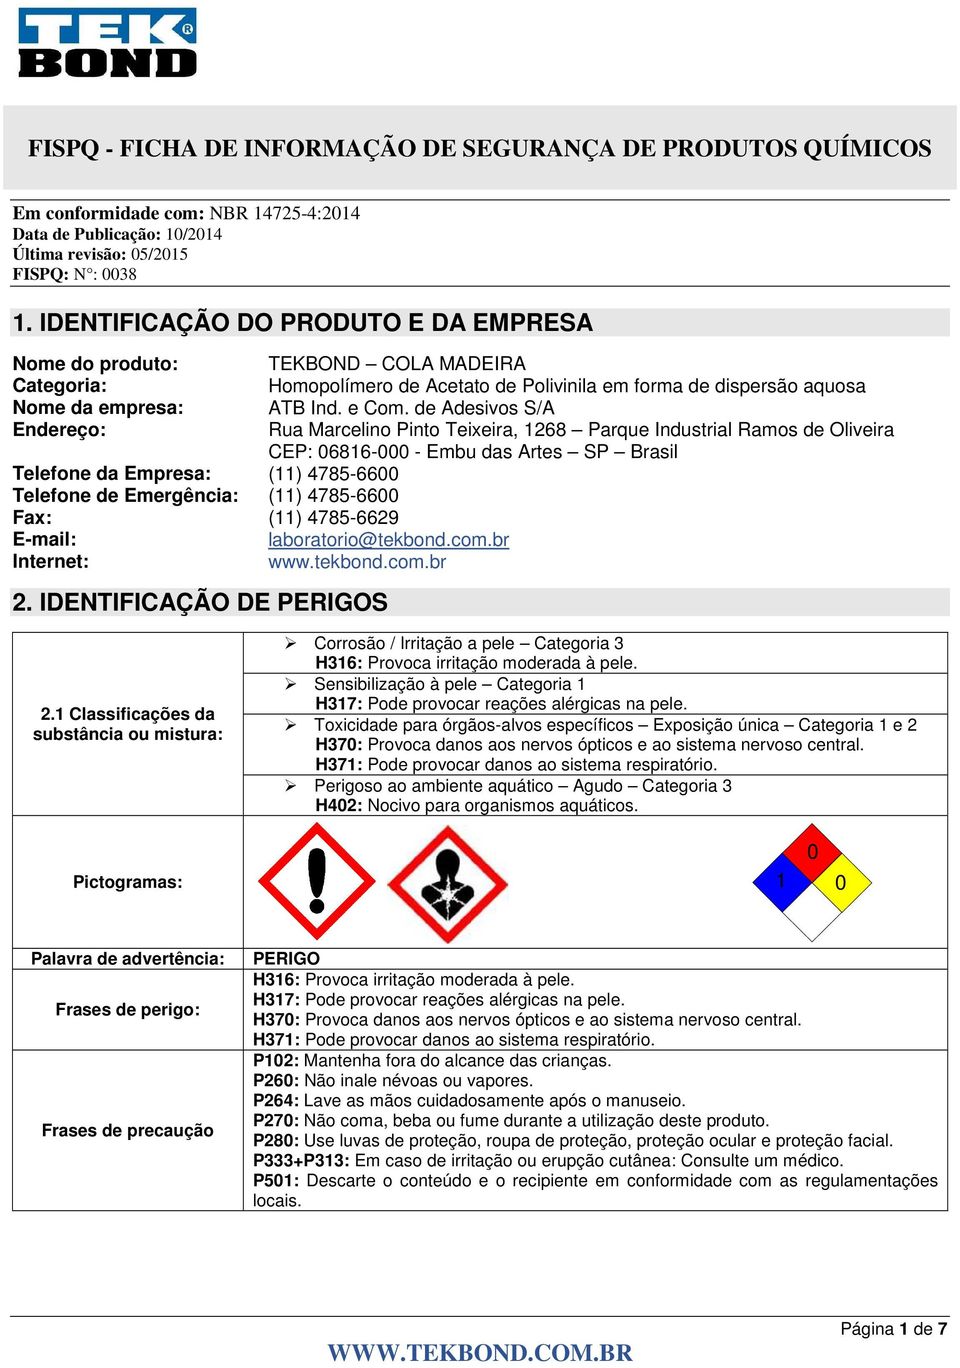 (11) 4785-6600 Fax: (11) 4785-6629 E-mail: laboratorio@tekbond.com.br Internet: www.tekbond.com.br 2. IDENTIFICAÇÃO DE PERIGOS 2.